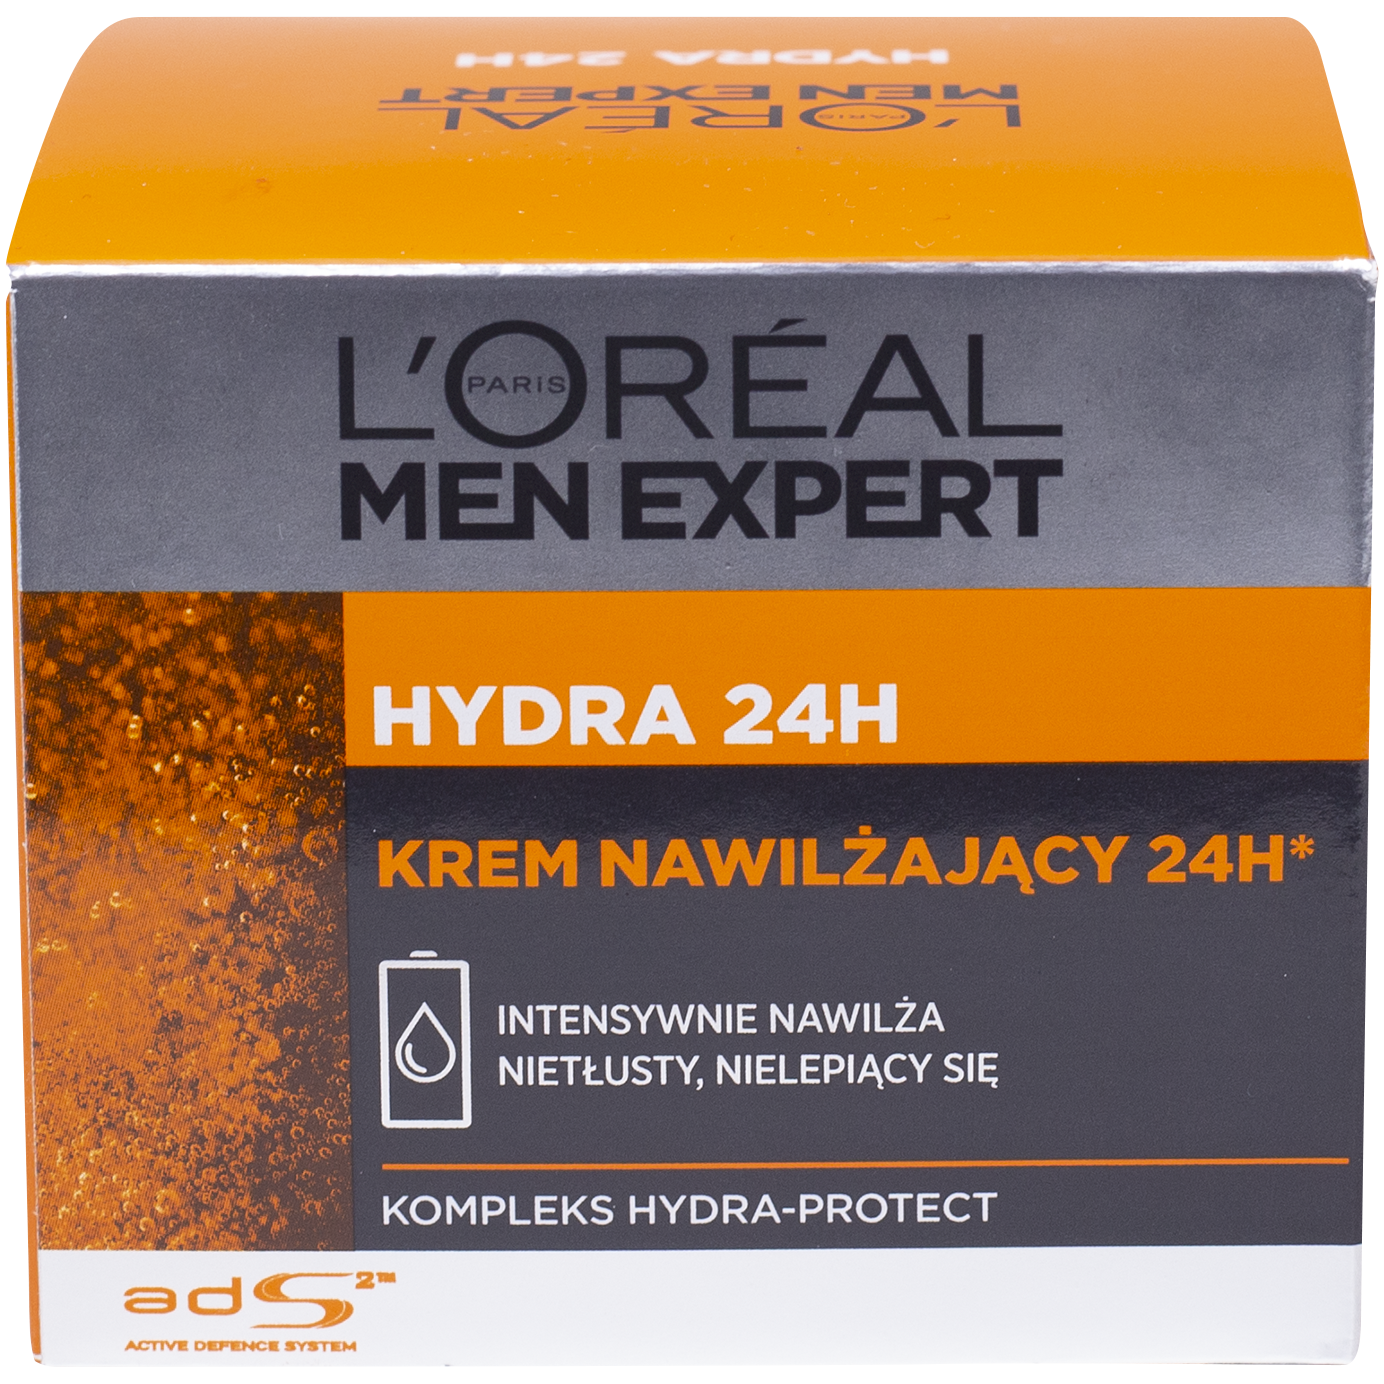 L'Oréal Paris Men Expert Hydra 24H intensywnie nawilżający krem do twarzy  męski, 50 ml | hebe.pl